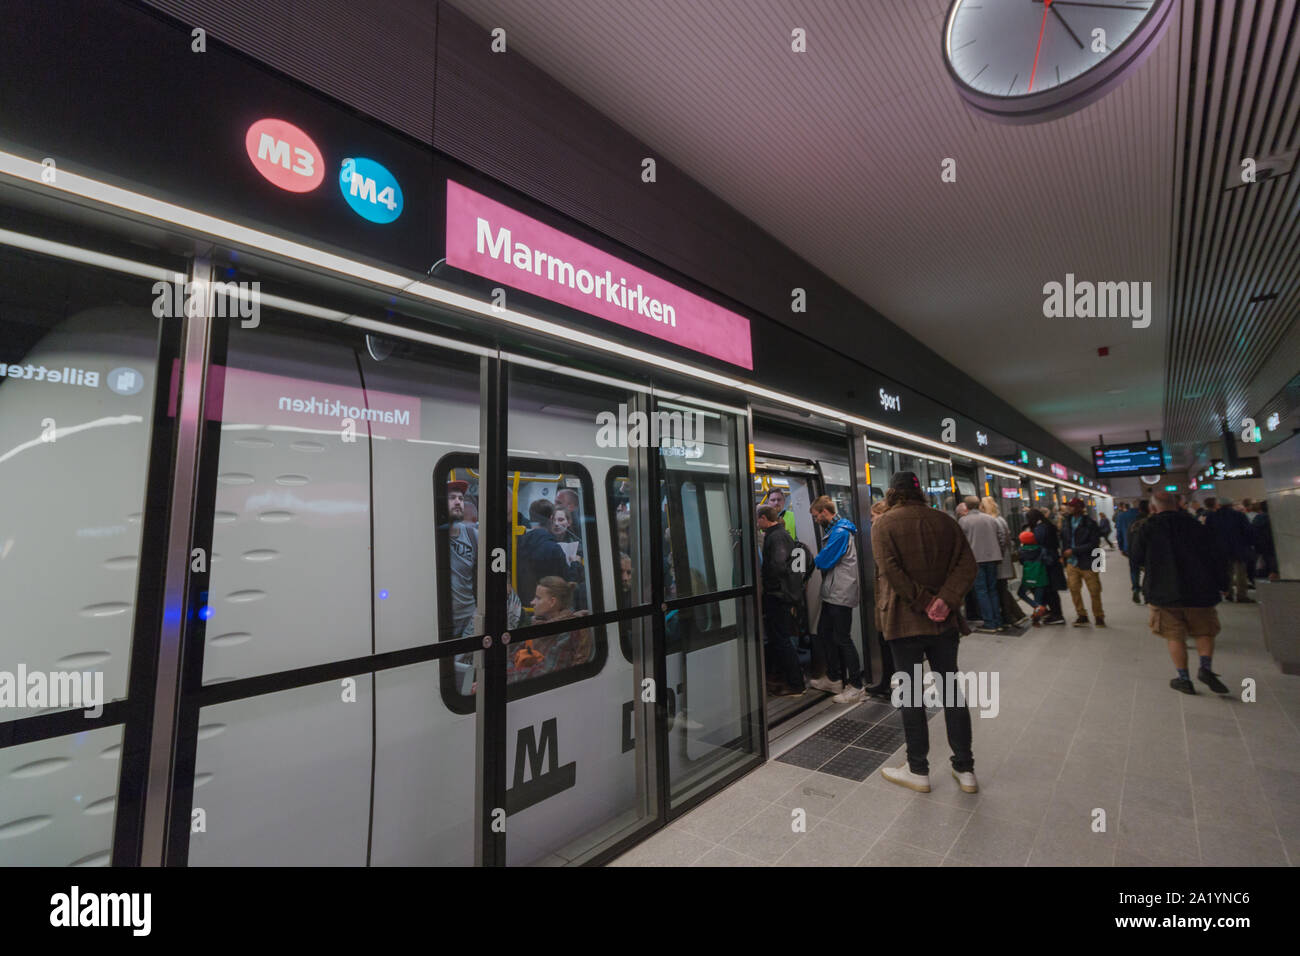 Copenhagen, Zealand Denmark - 29 9 2019: People trying new M3 Cityringen metro line. Marmorkirken Station Stock Photo